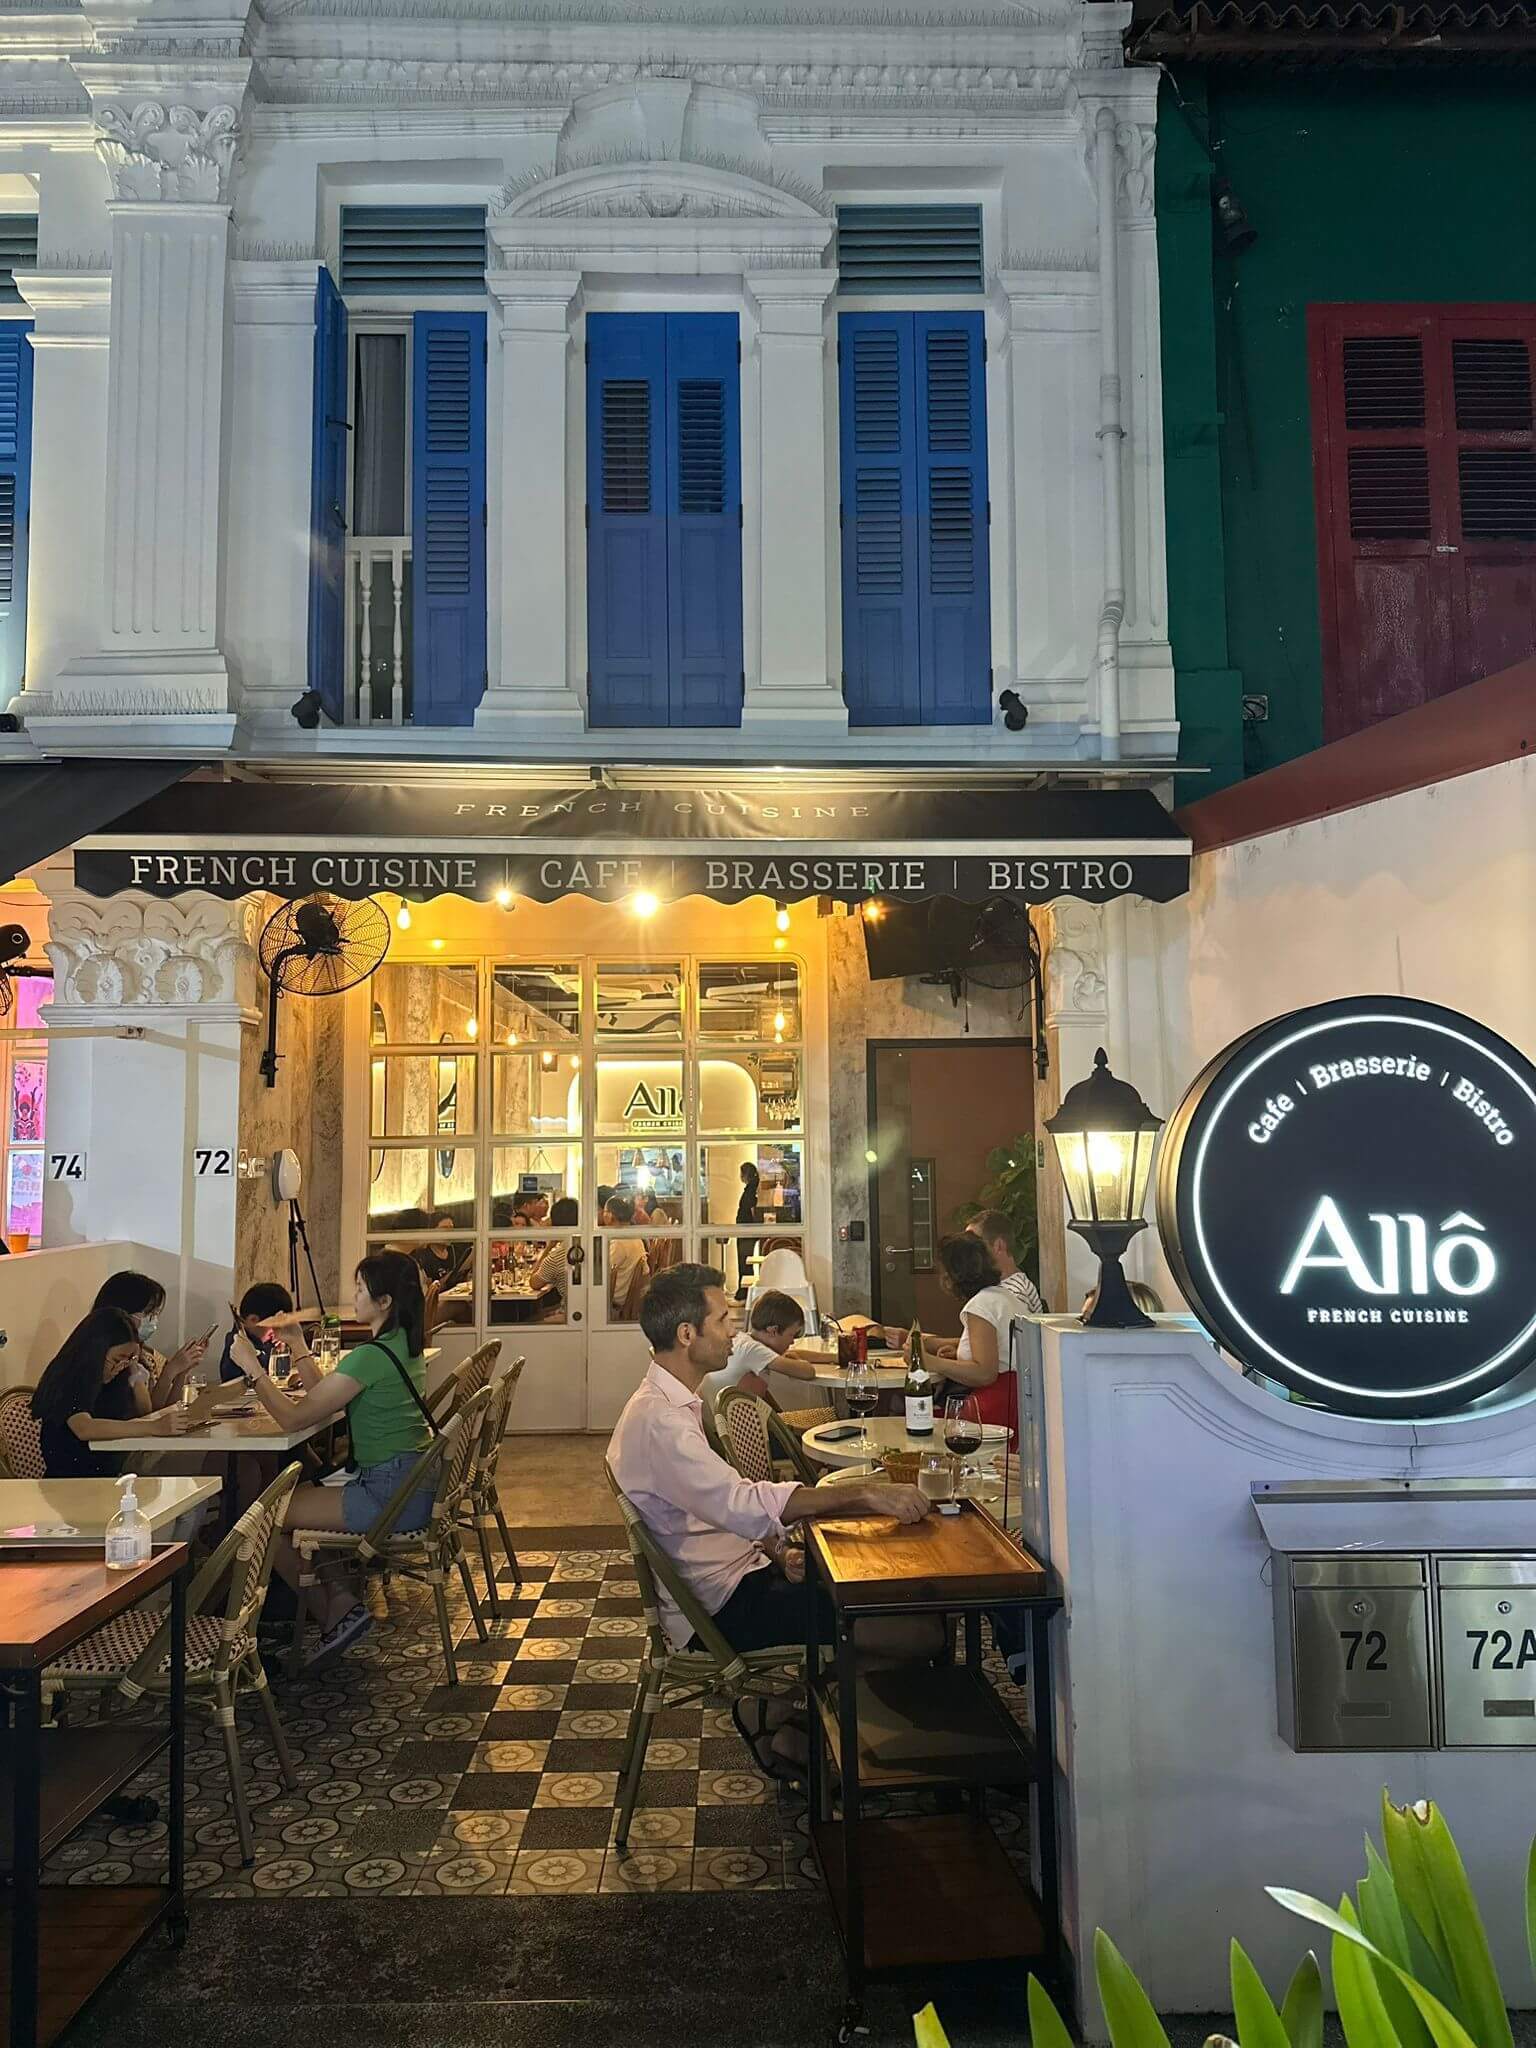 (已失效)Allô French Cuisine Restaurant for Sale/Takeover/Expansion - Fully Equipped with Excellent Reviews